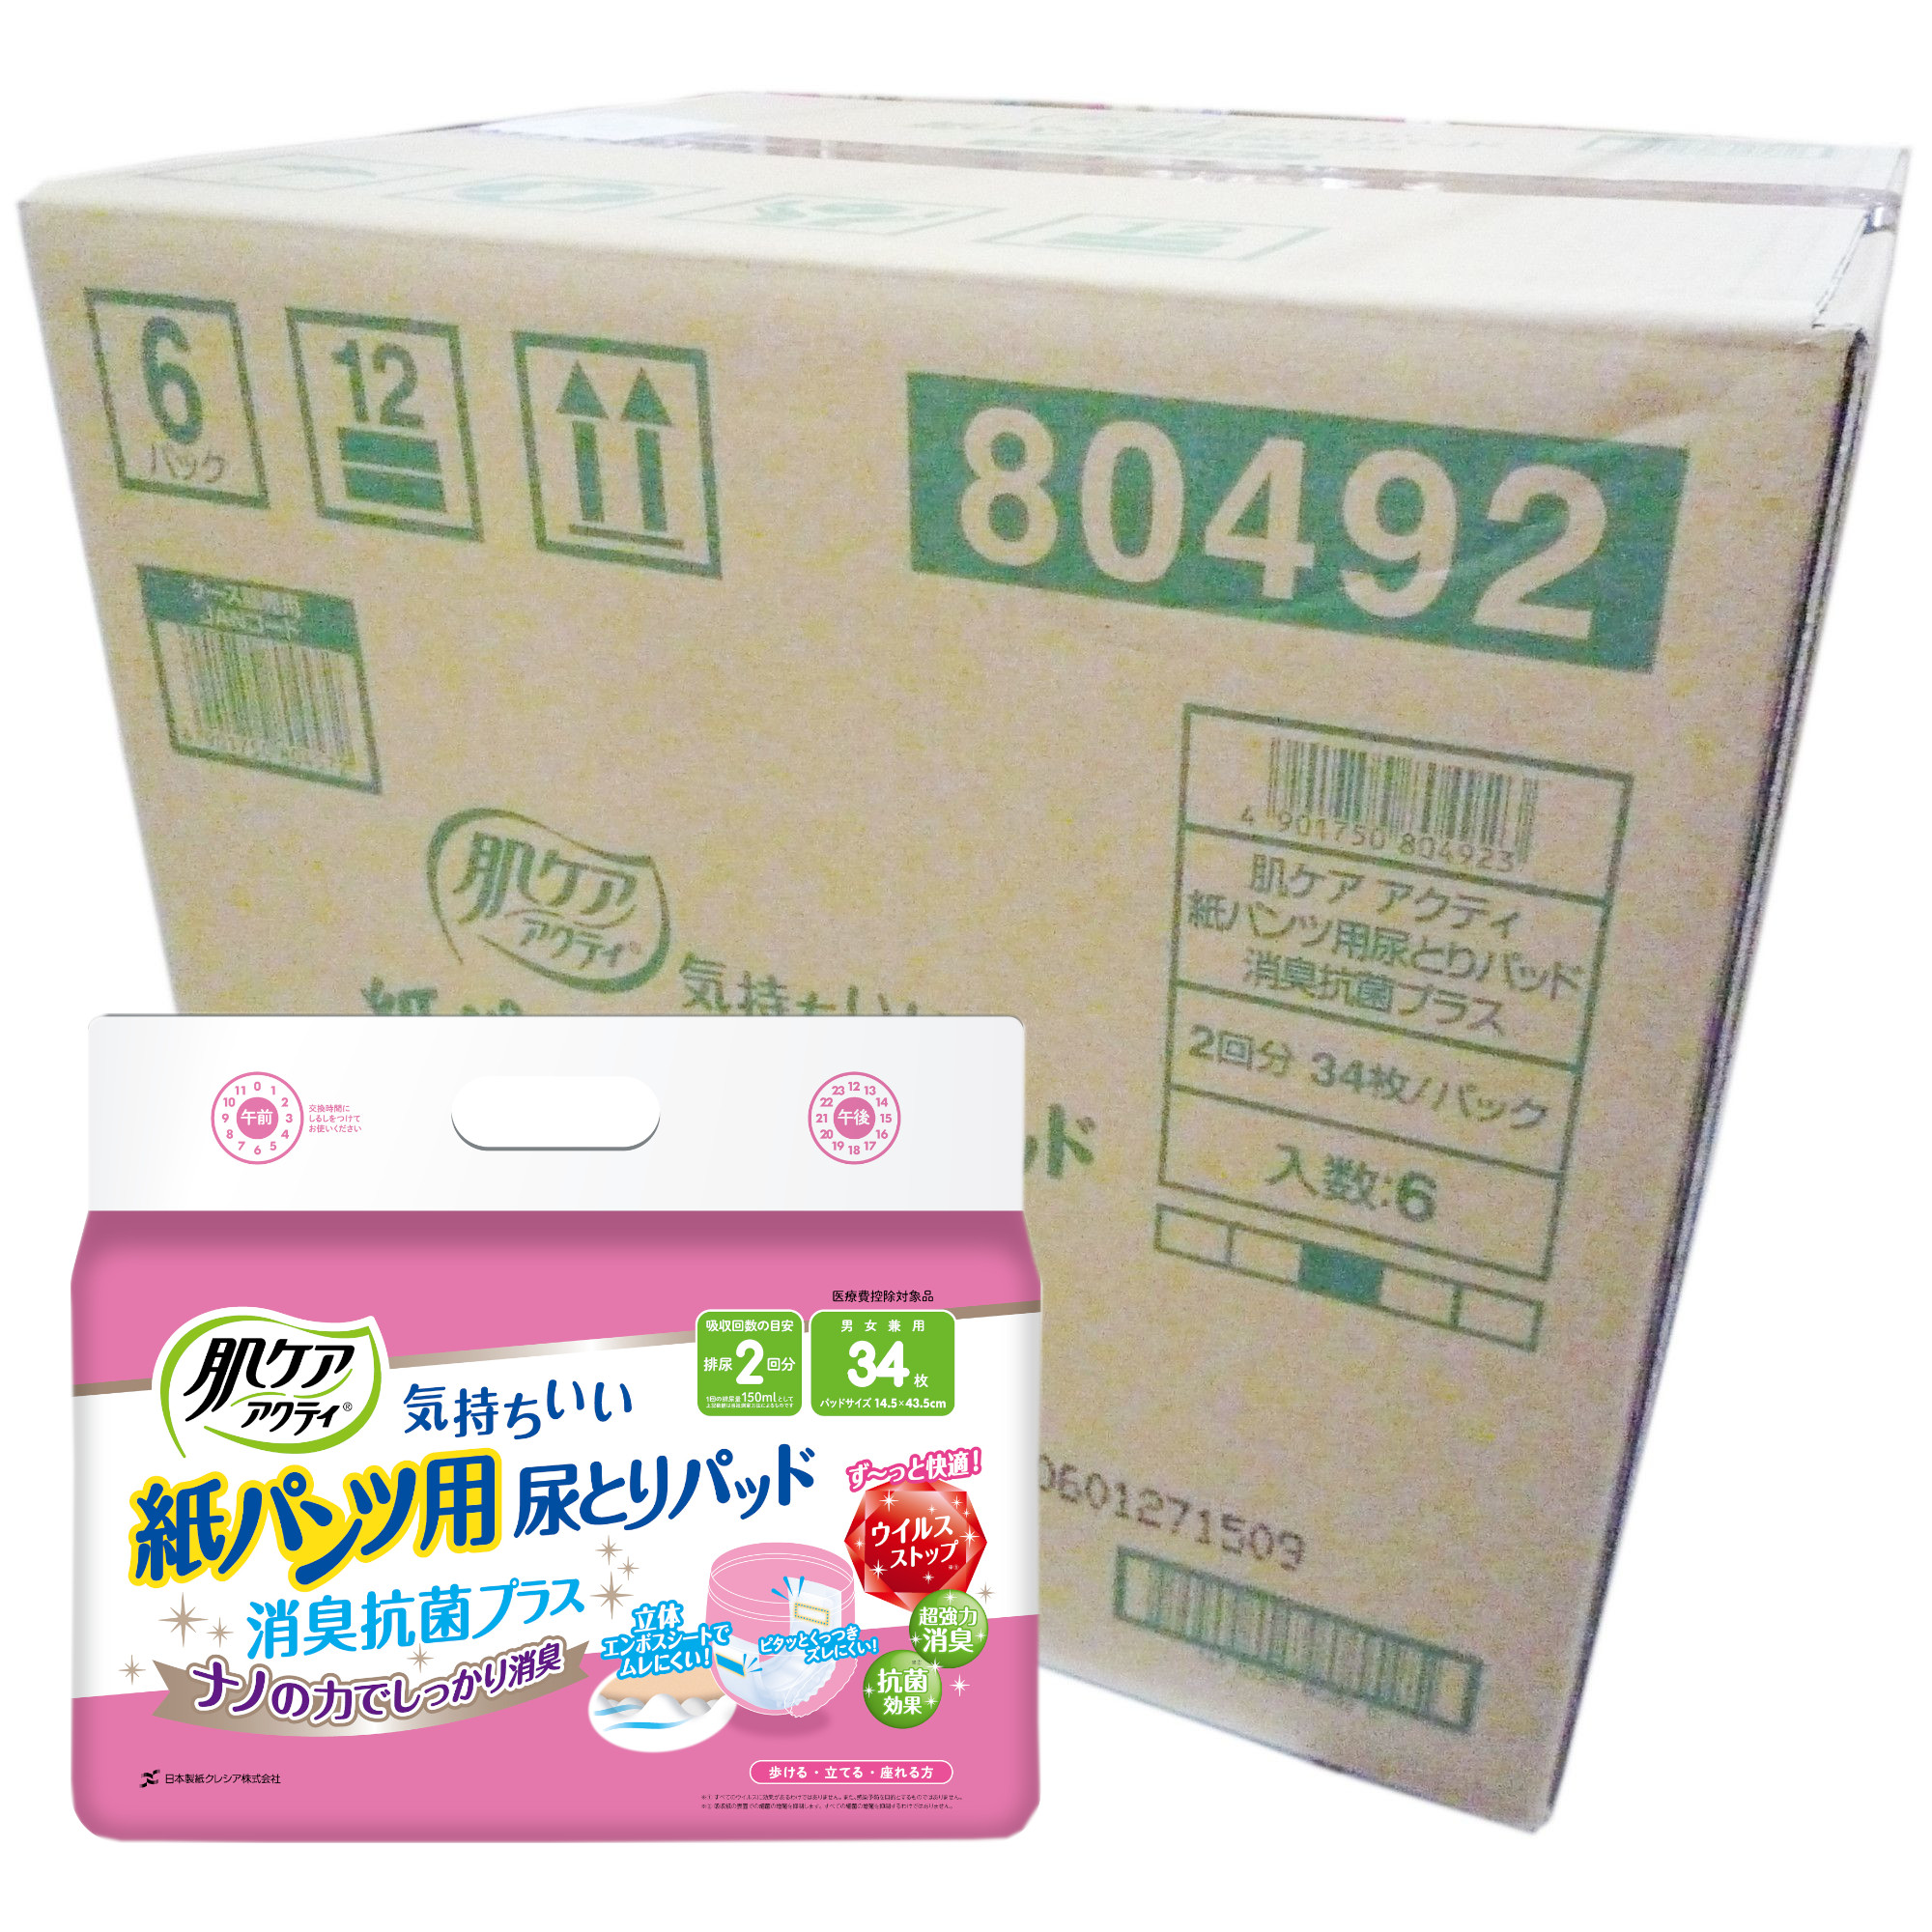  肌ケア アクティ 紙パンツ用尿とりパッド消臭抗菌プラス 2回分吸収 34枚 6個セット [日本製紙クレシア] (3109730)